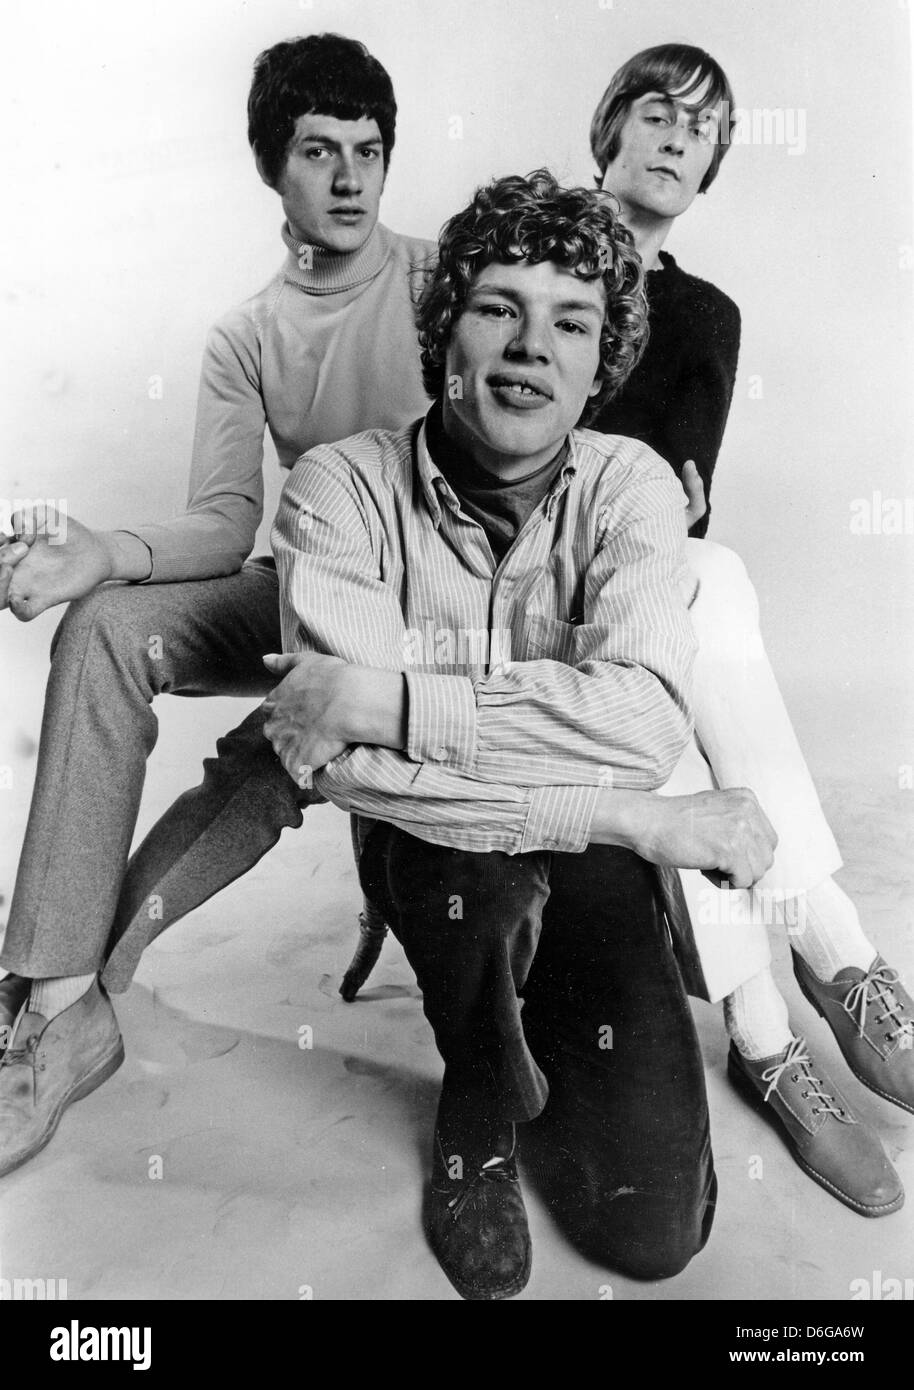 WARME Töne UK-pop-Gruppe im Jahr 1967. Nachschlagewerke erwähnen nur die Gruppe mit zwei Mitgliedern, aber in dieser Sitzung gab es drei. Foto Tony Gale Stockfoto